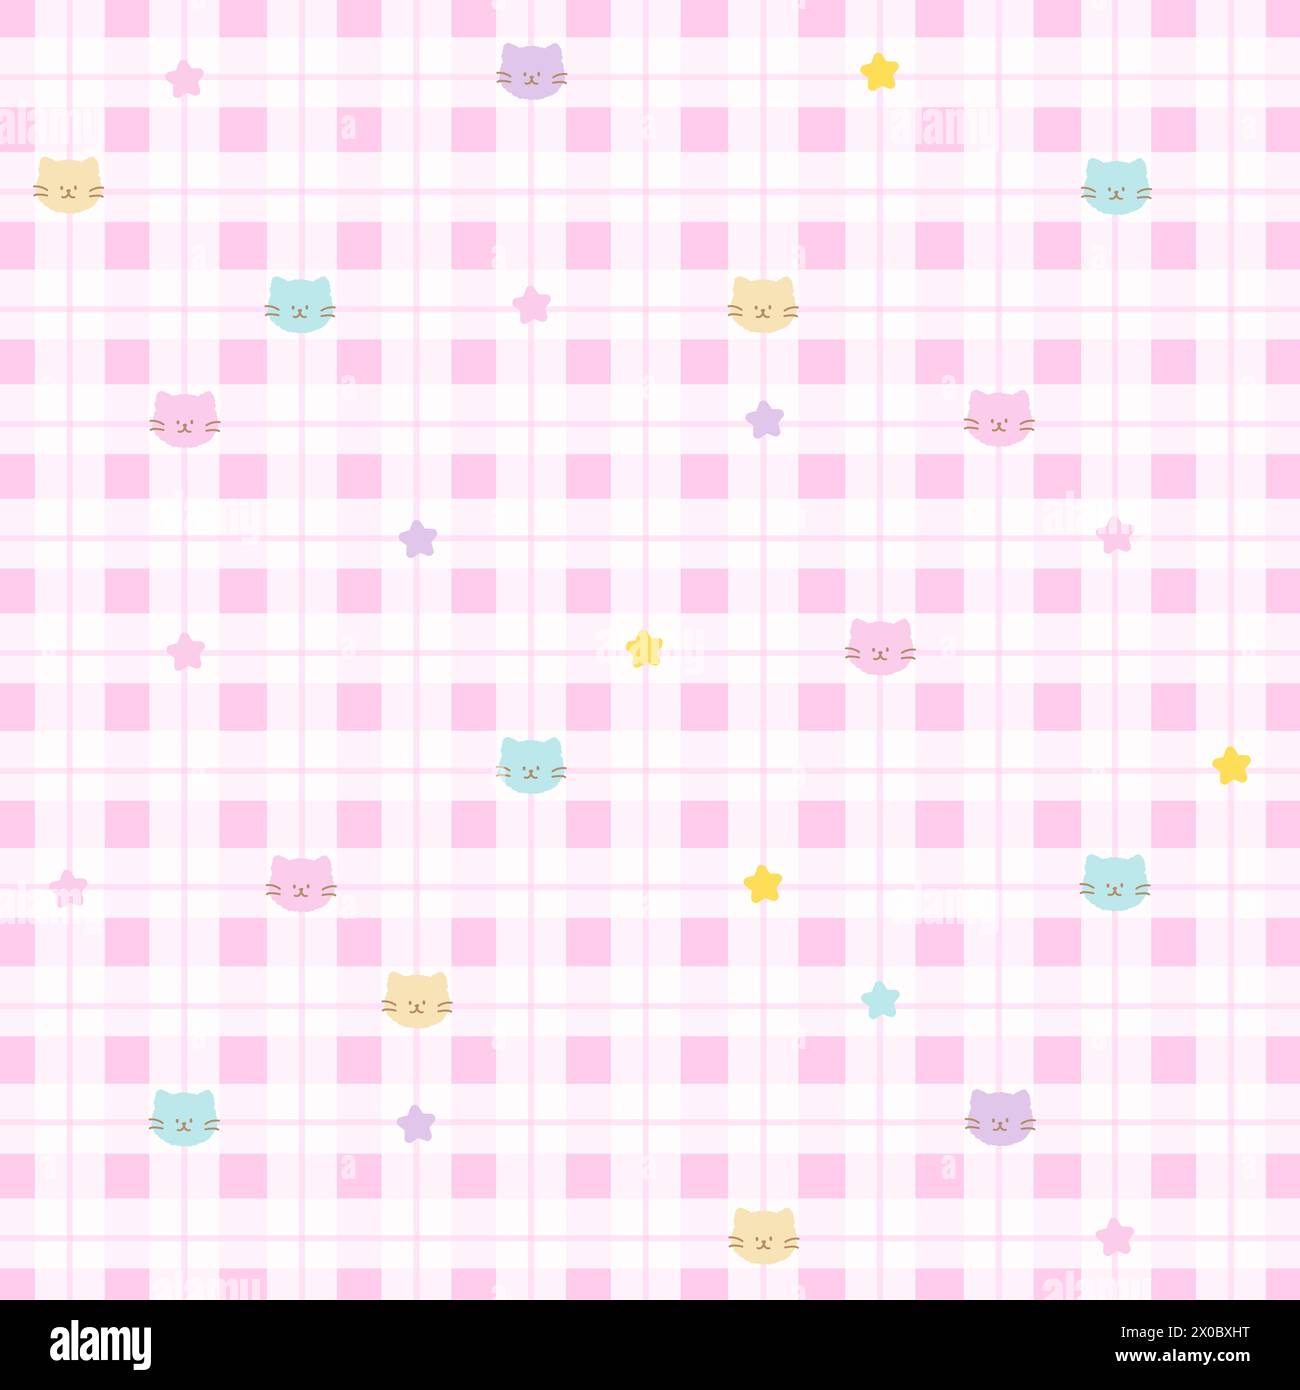 Illustration der Katze auf einem quadratischen rosa karierten Hintergrund für niedliches Muster, Stoffdruck, Tiertapete, Kinderkleidung, Sommer, Picknick, Adoption, Rettung Stock Vektor